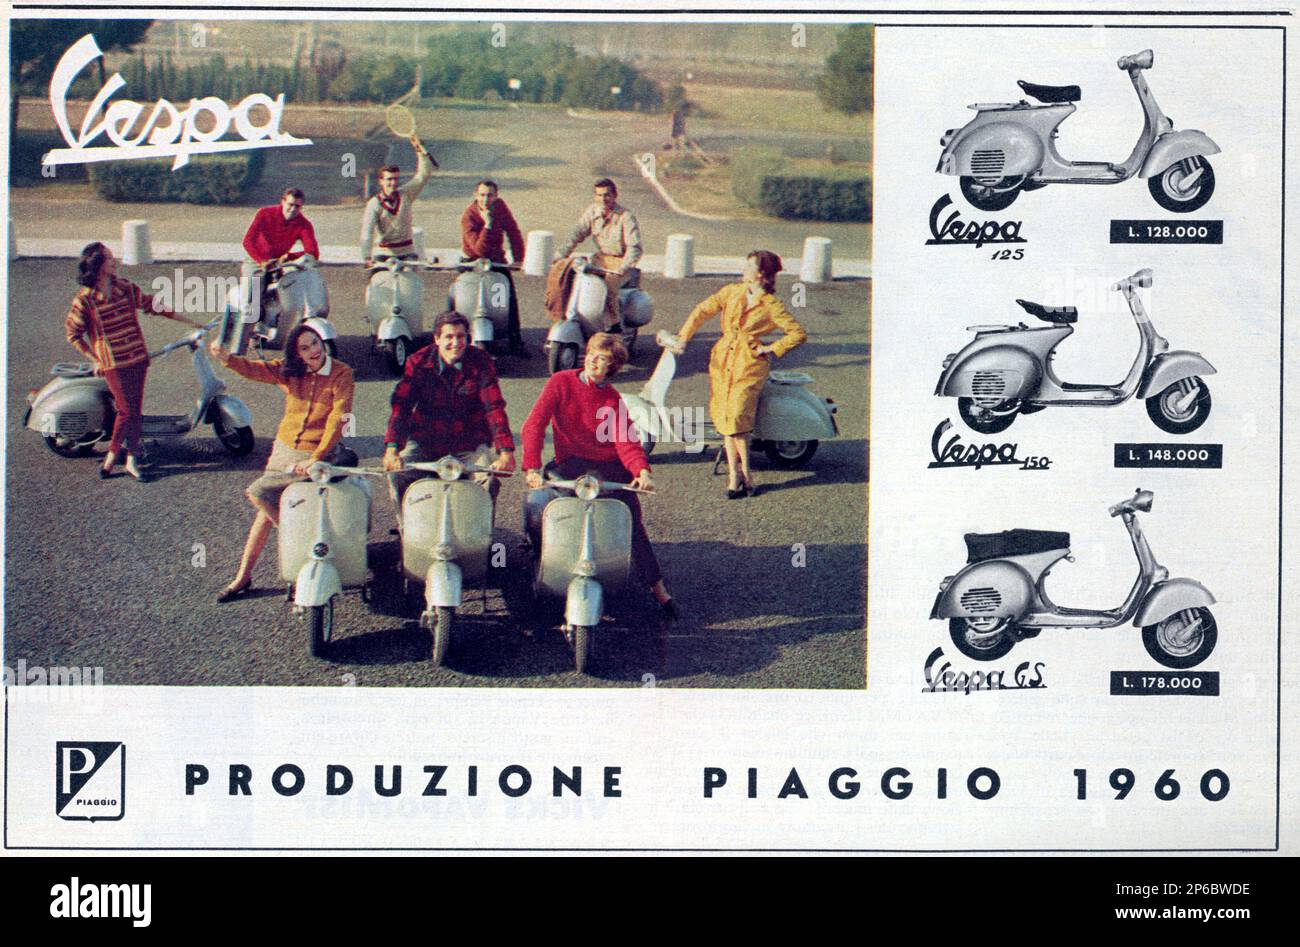 1960 , ITALIA : lo scooter italiano VESPA by PIAGGIO - MOTOCICLISMO - MOTOCICLISTI - bike - bikers - MOTO - motocicletta - motorino - scooter - ANNI SESSANTA - anni '60 - Pubblicità - advertising - motoscooters --- Archivio GBB Foto Stock